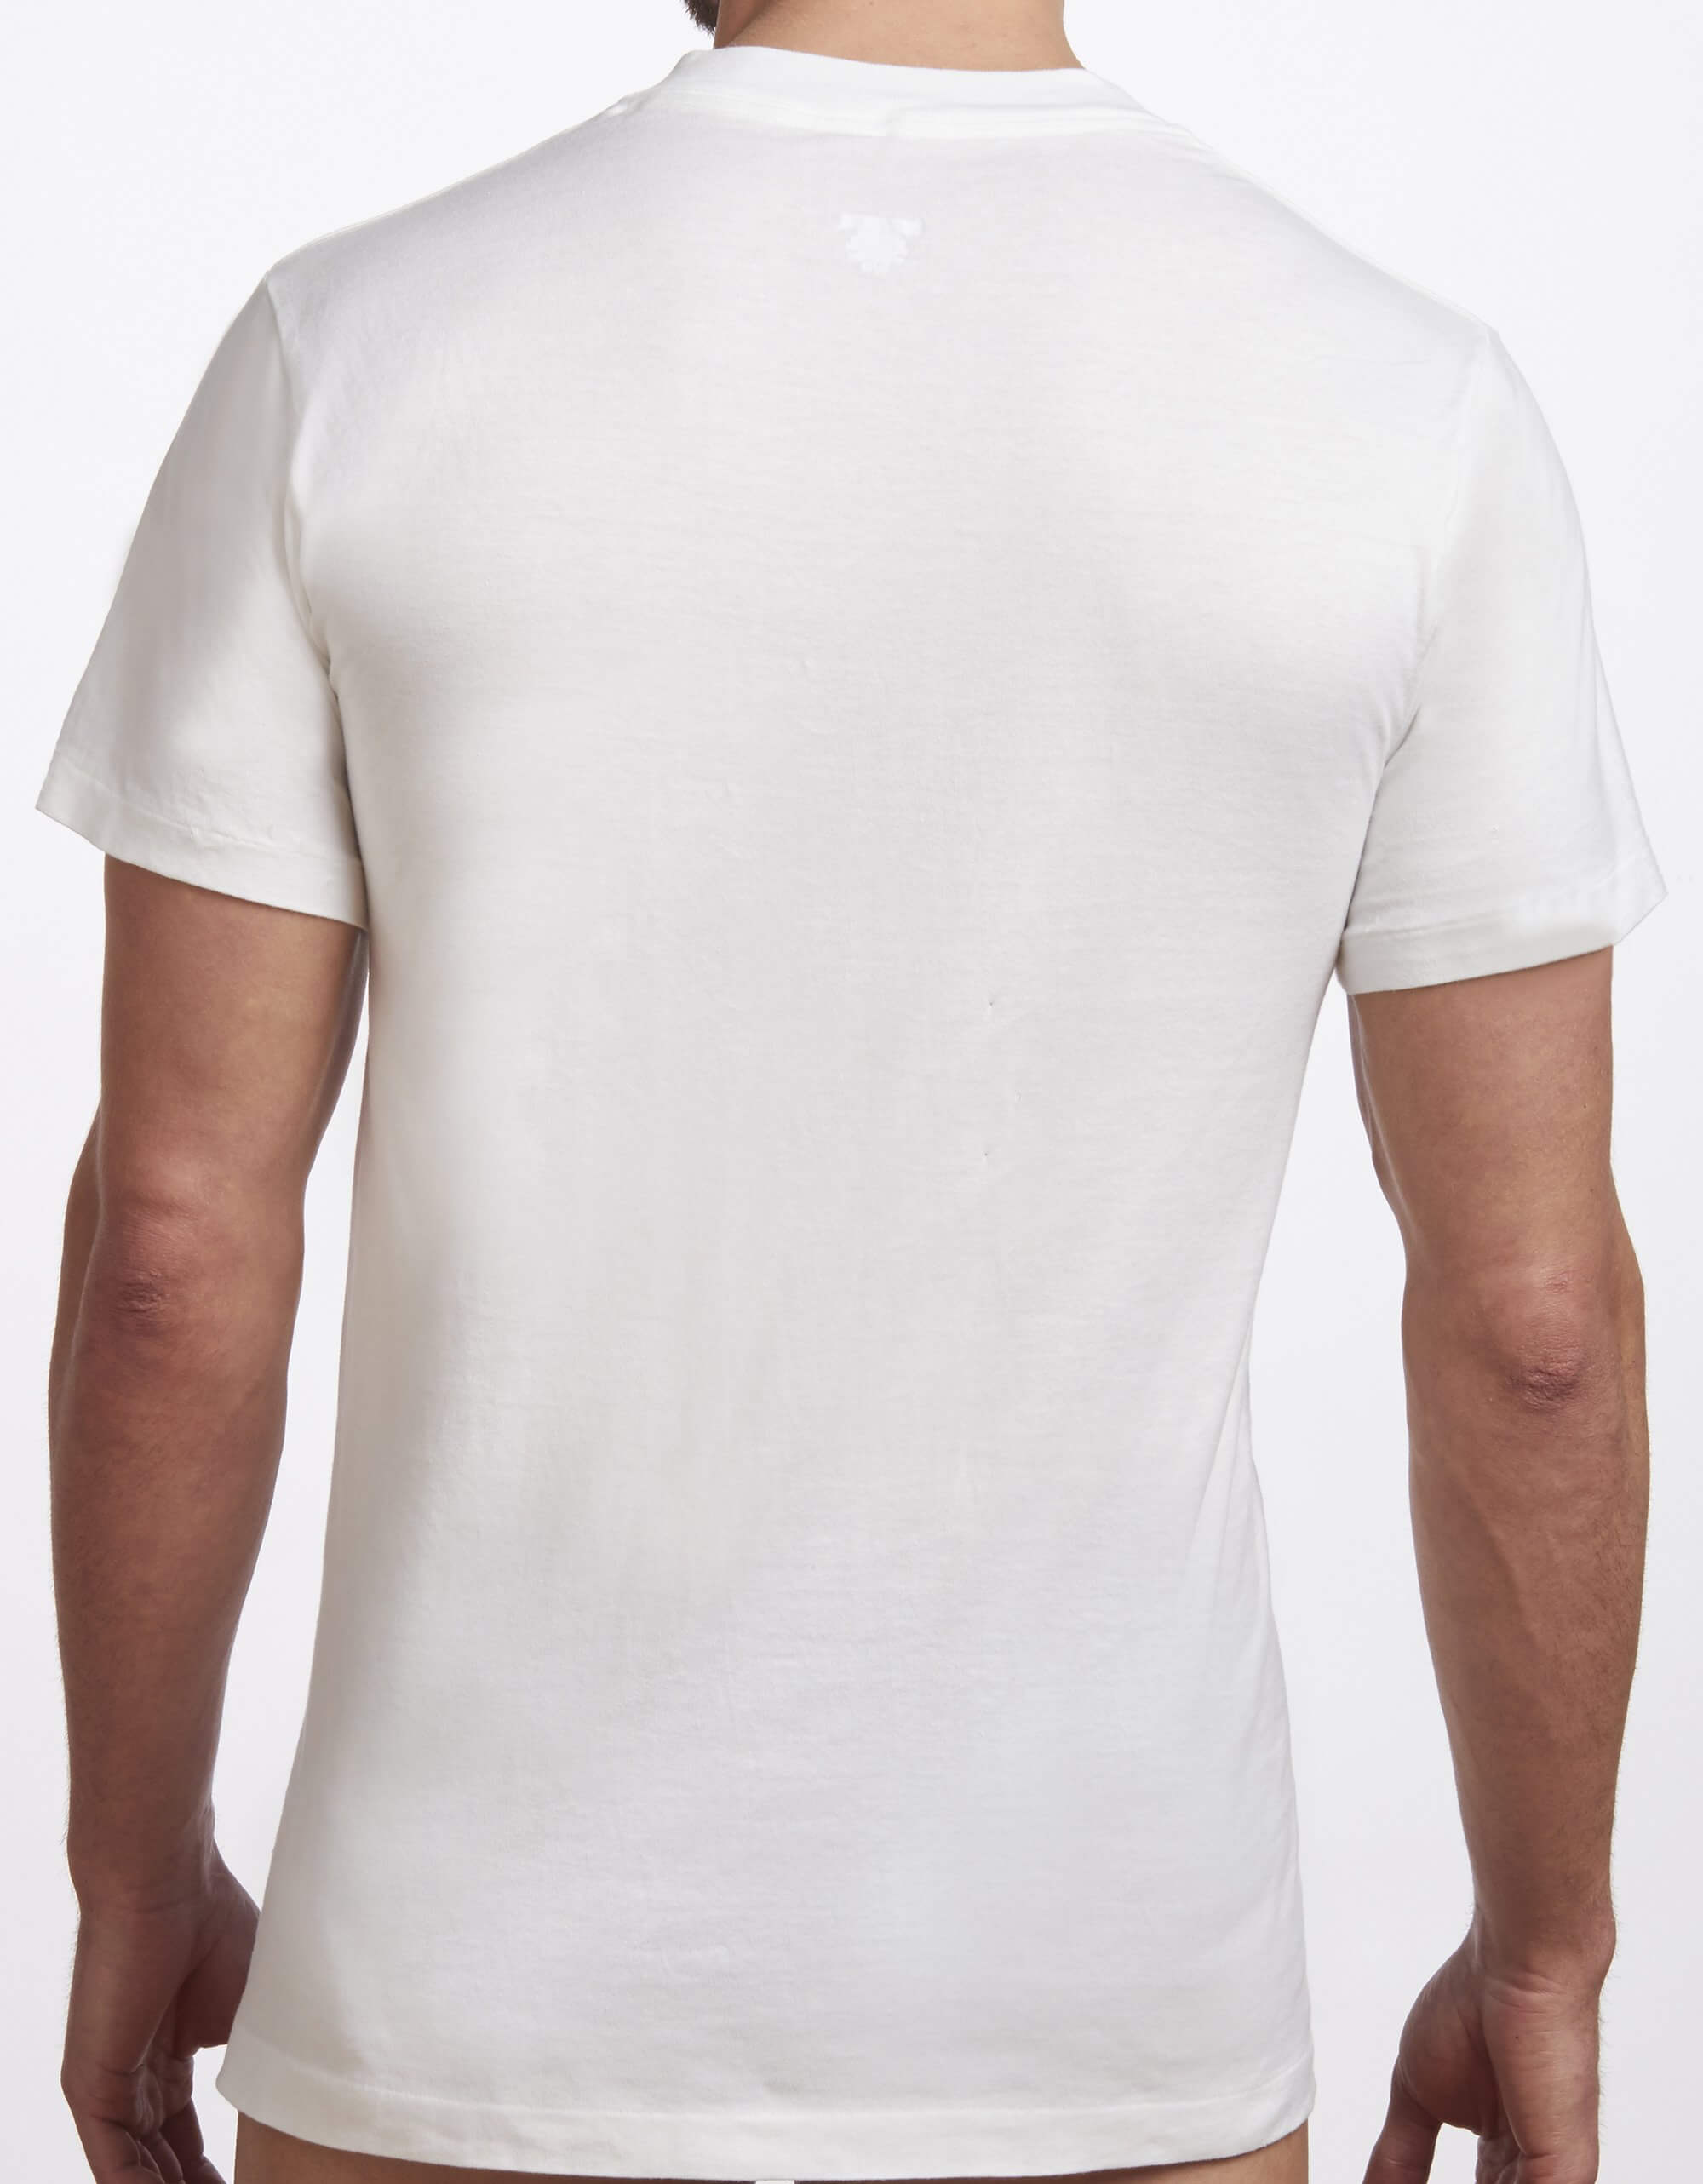 Men's Premium Cotton T-Shirt - 2 pack